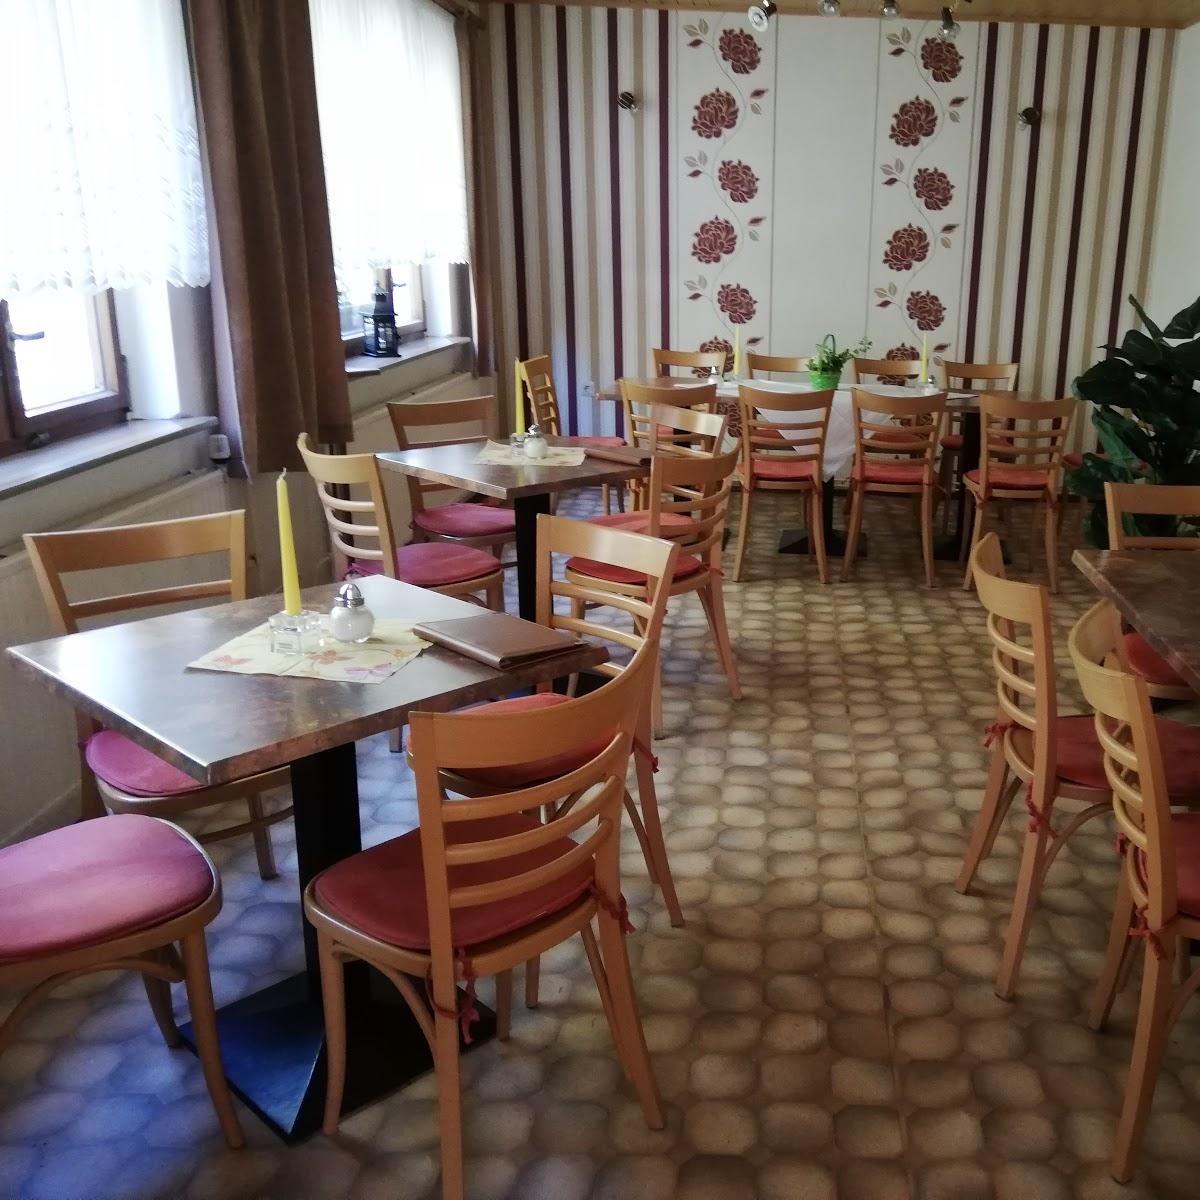 Restaurant "Waldcafe" in Schorfheide